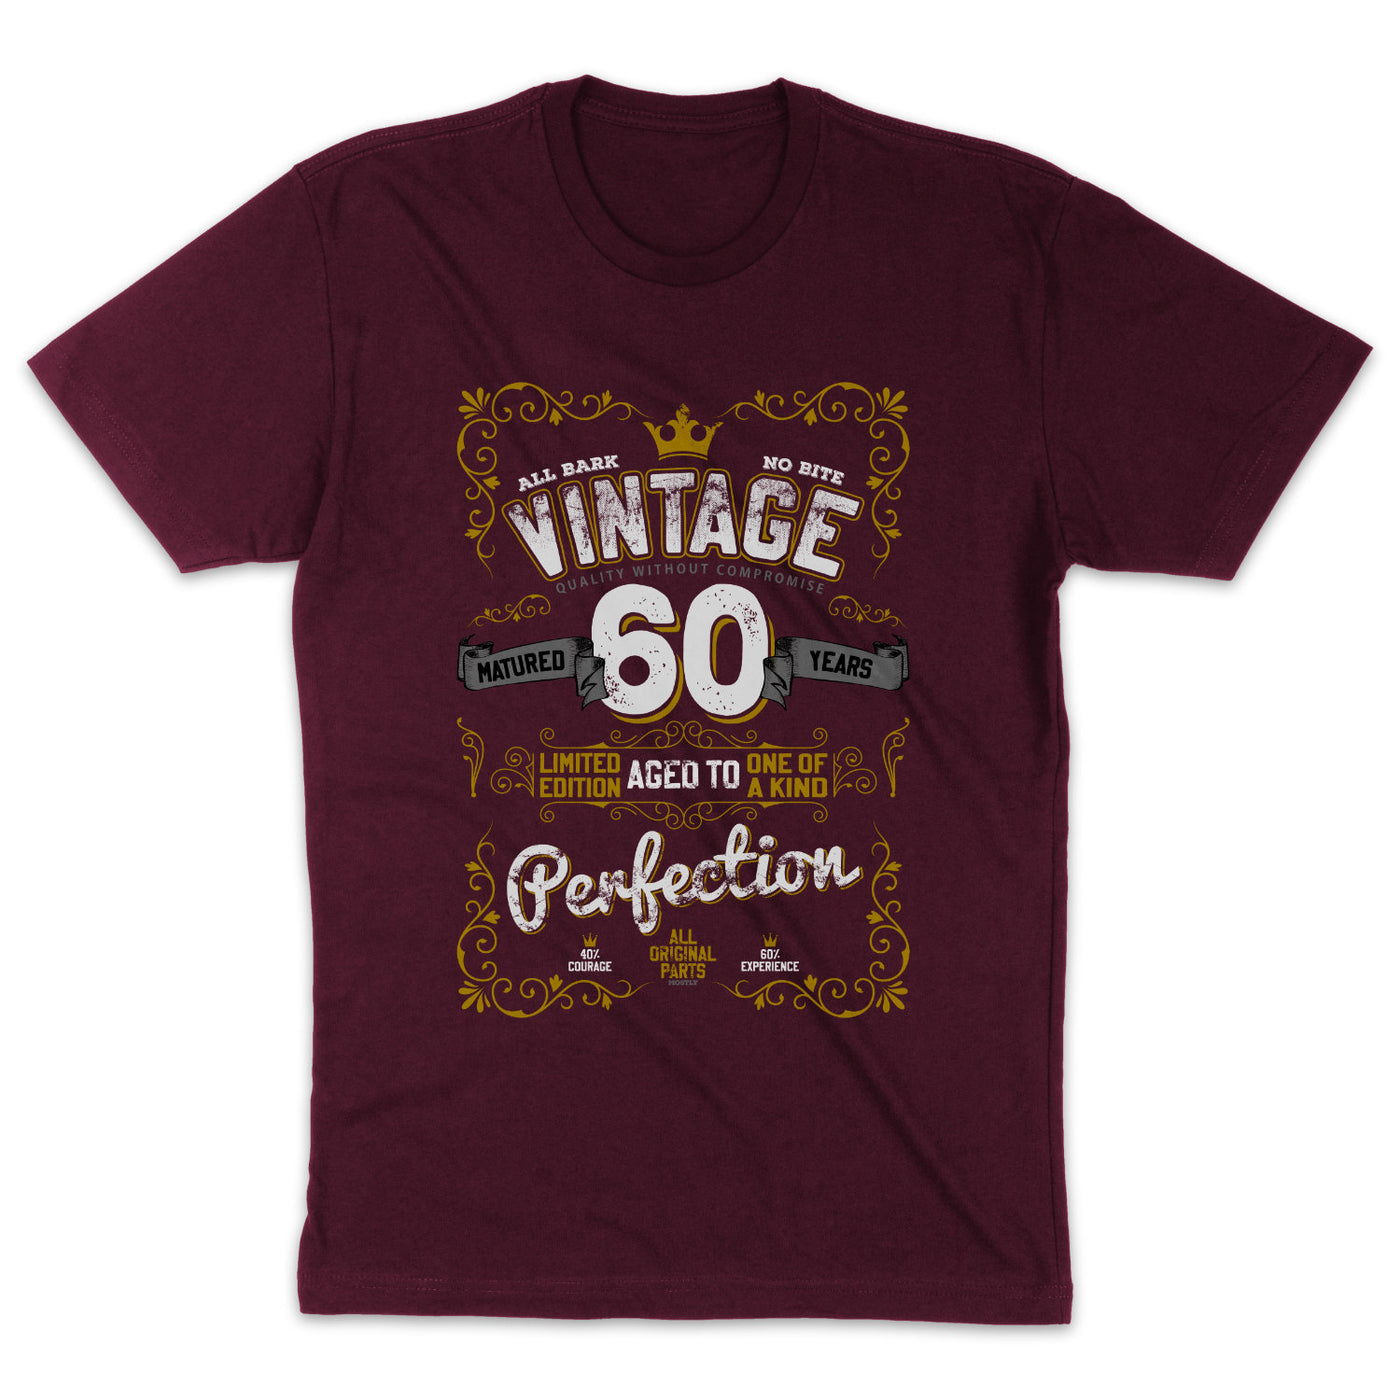 Vintage Geburtstagsshirt 60. Geburtstag T-Shirt Unisex